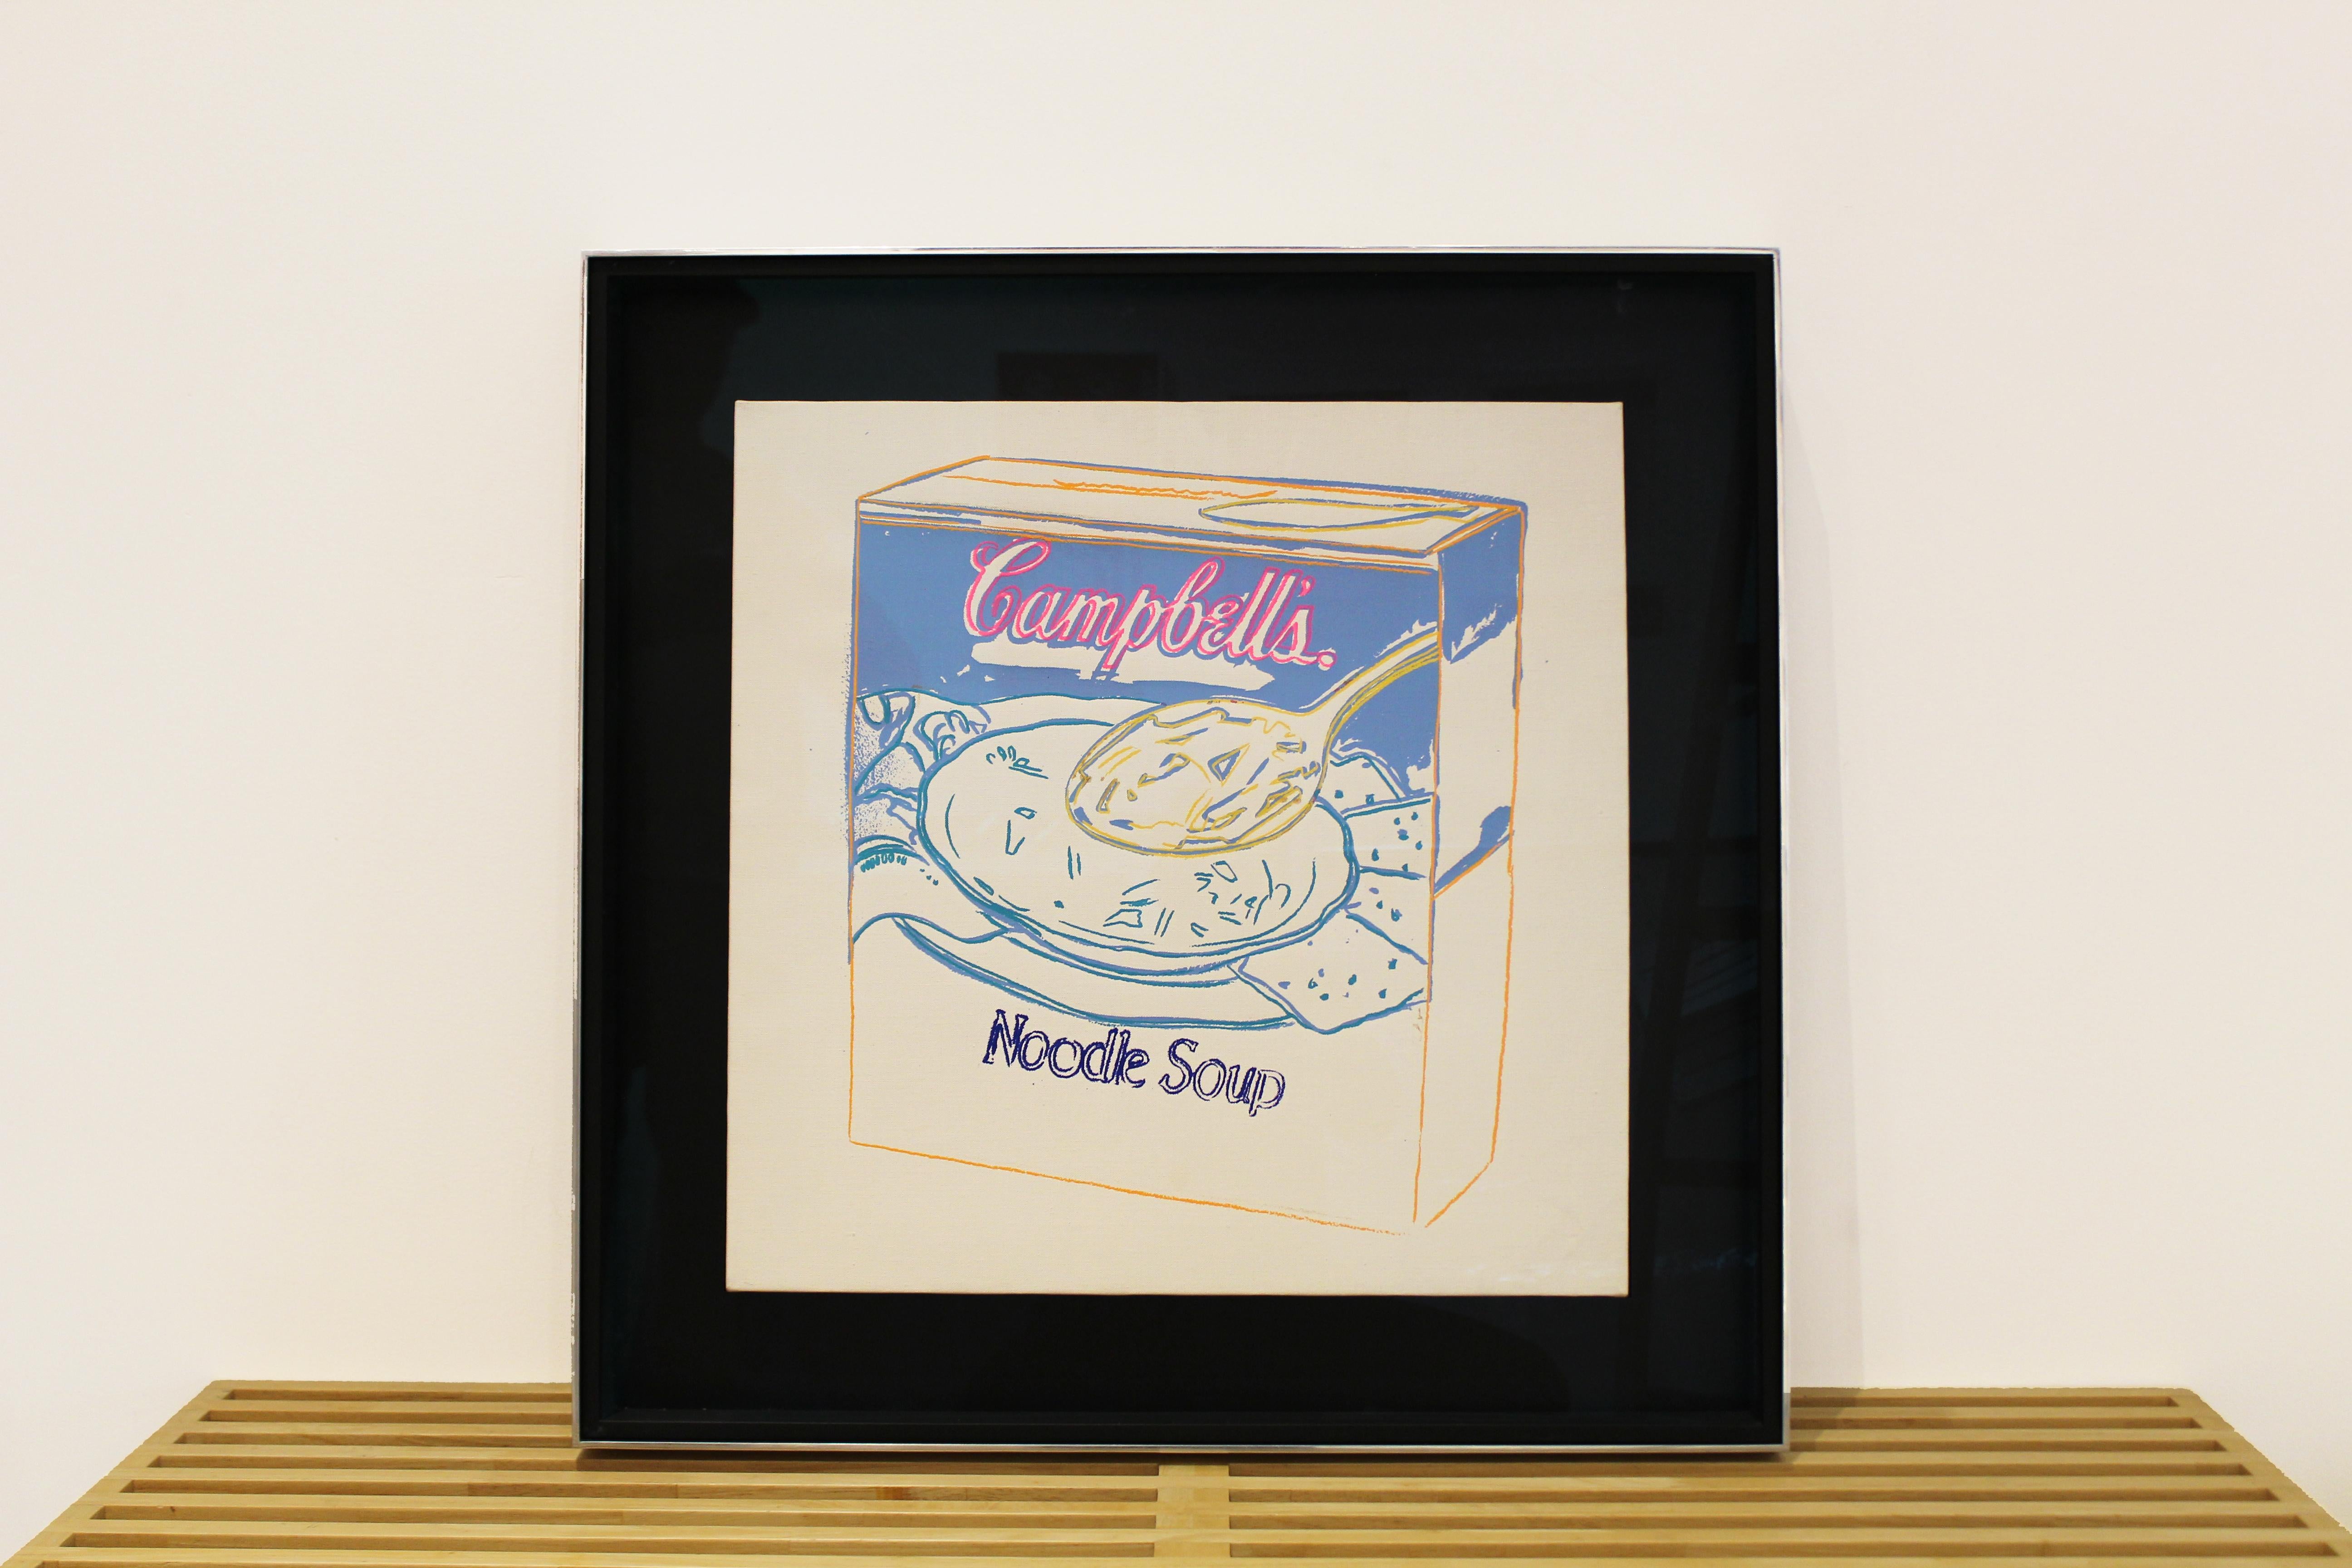 Boîte à soupe Campbell's : Soupière noodle - Painting de Andy Warhol